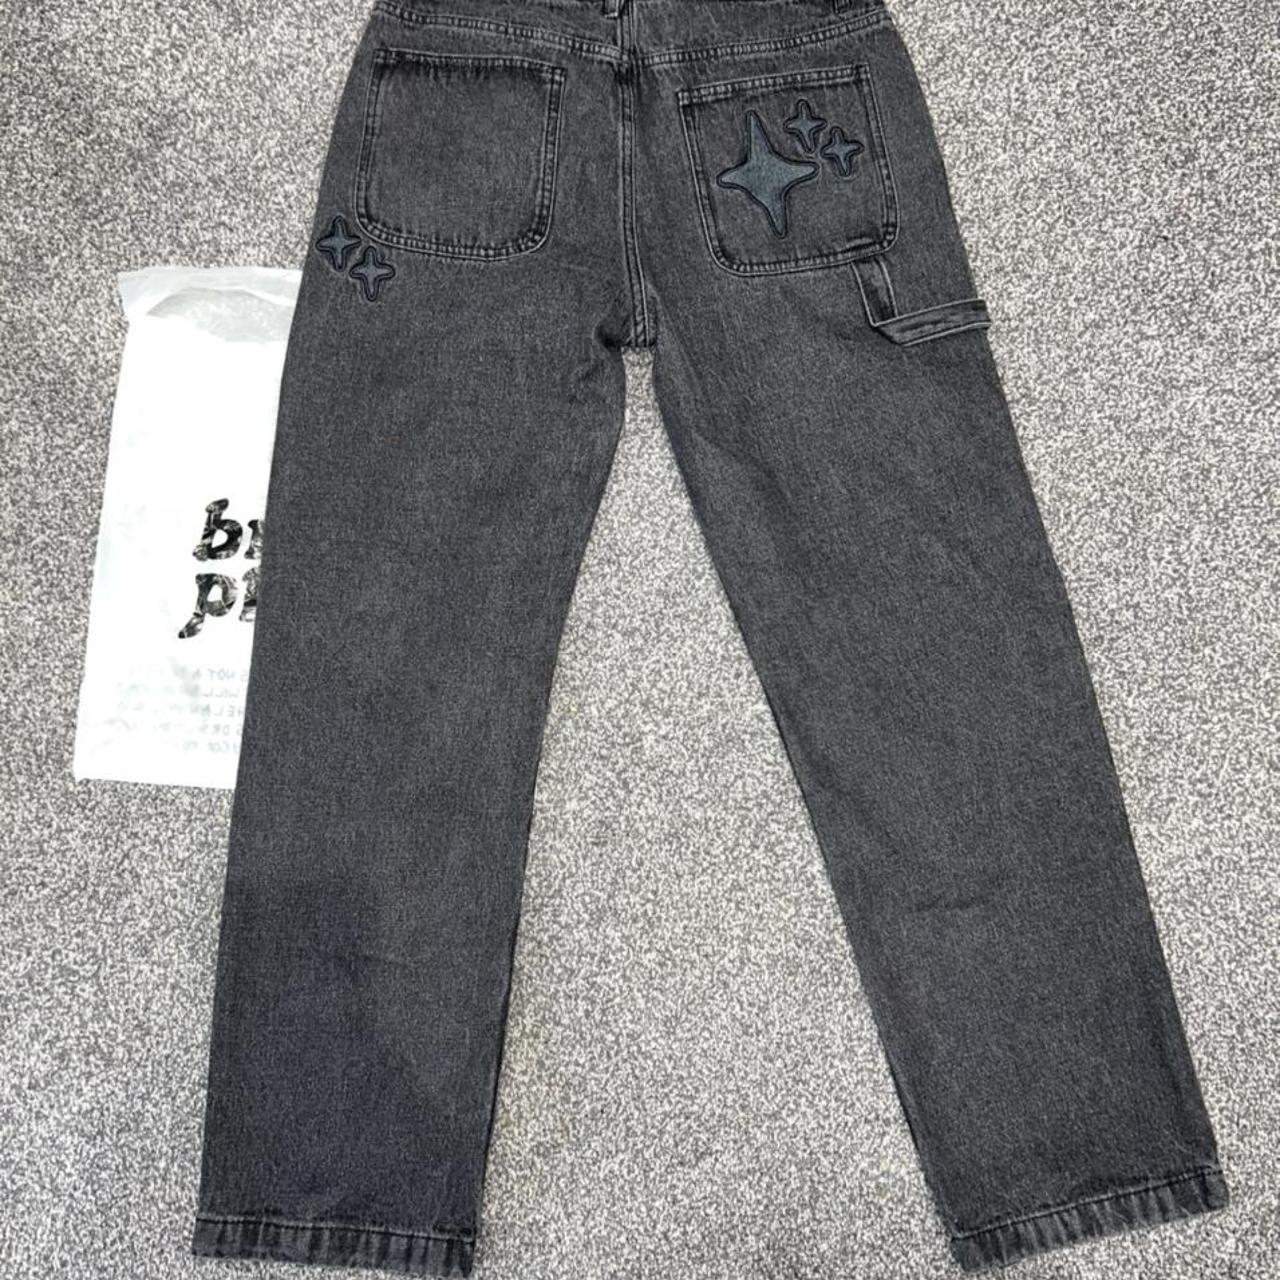 Broken Planet Market Multi-Star Jeans W30/L30, brand... - Depop